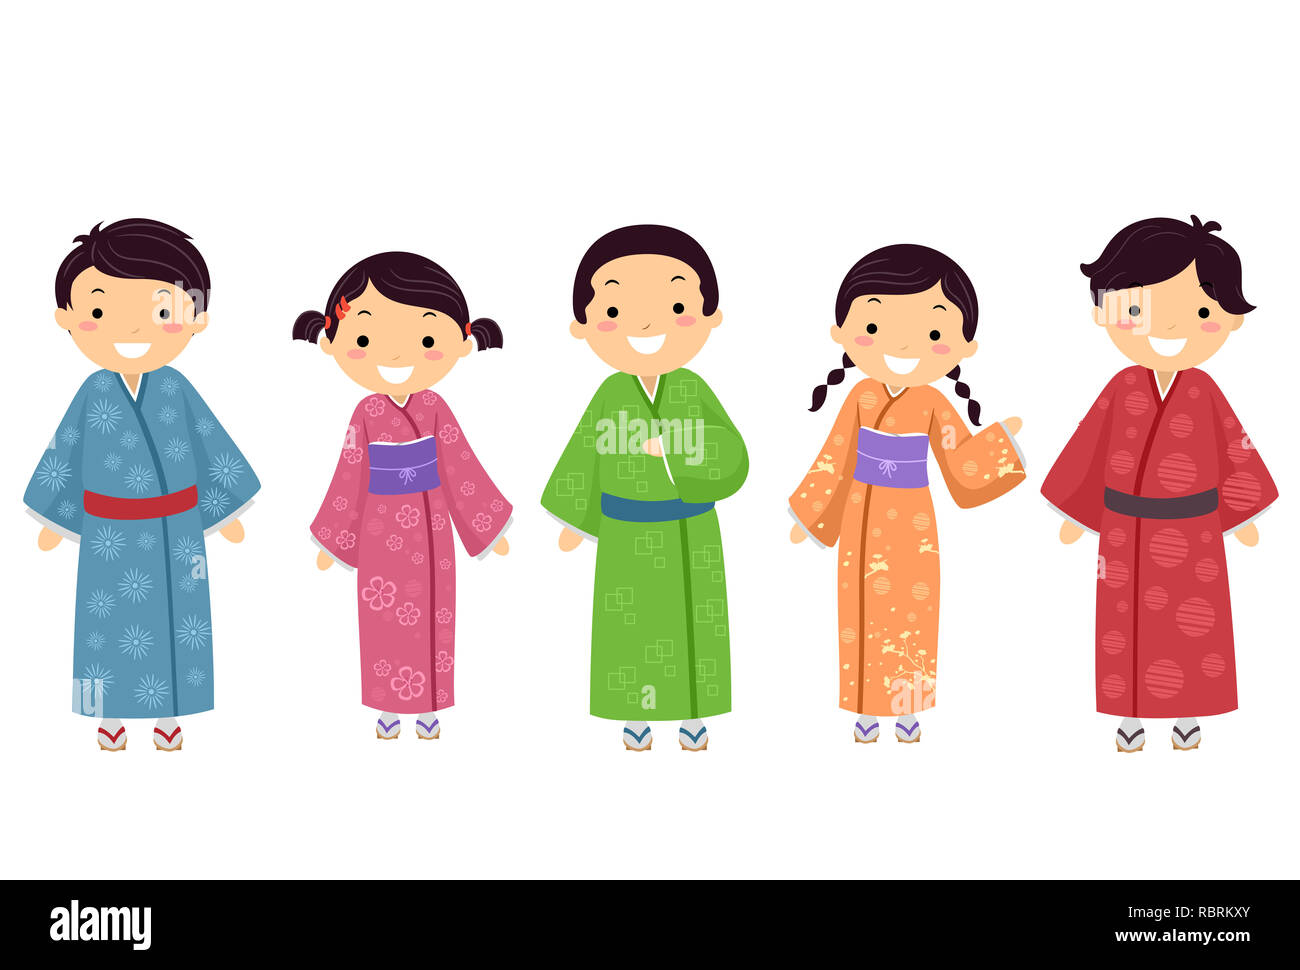 Illustrazione di Stickman ragazzi giapponesi di indossare il kimono in diversi colori Foto Stock